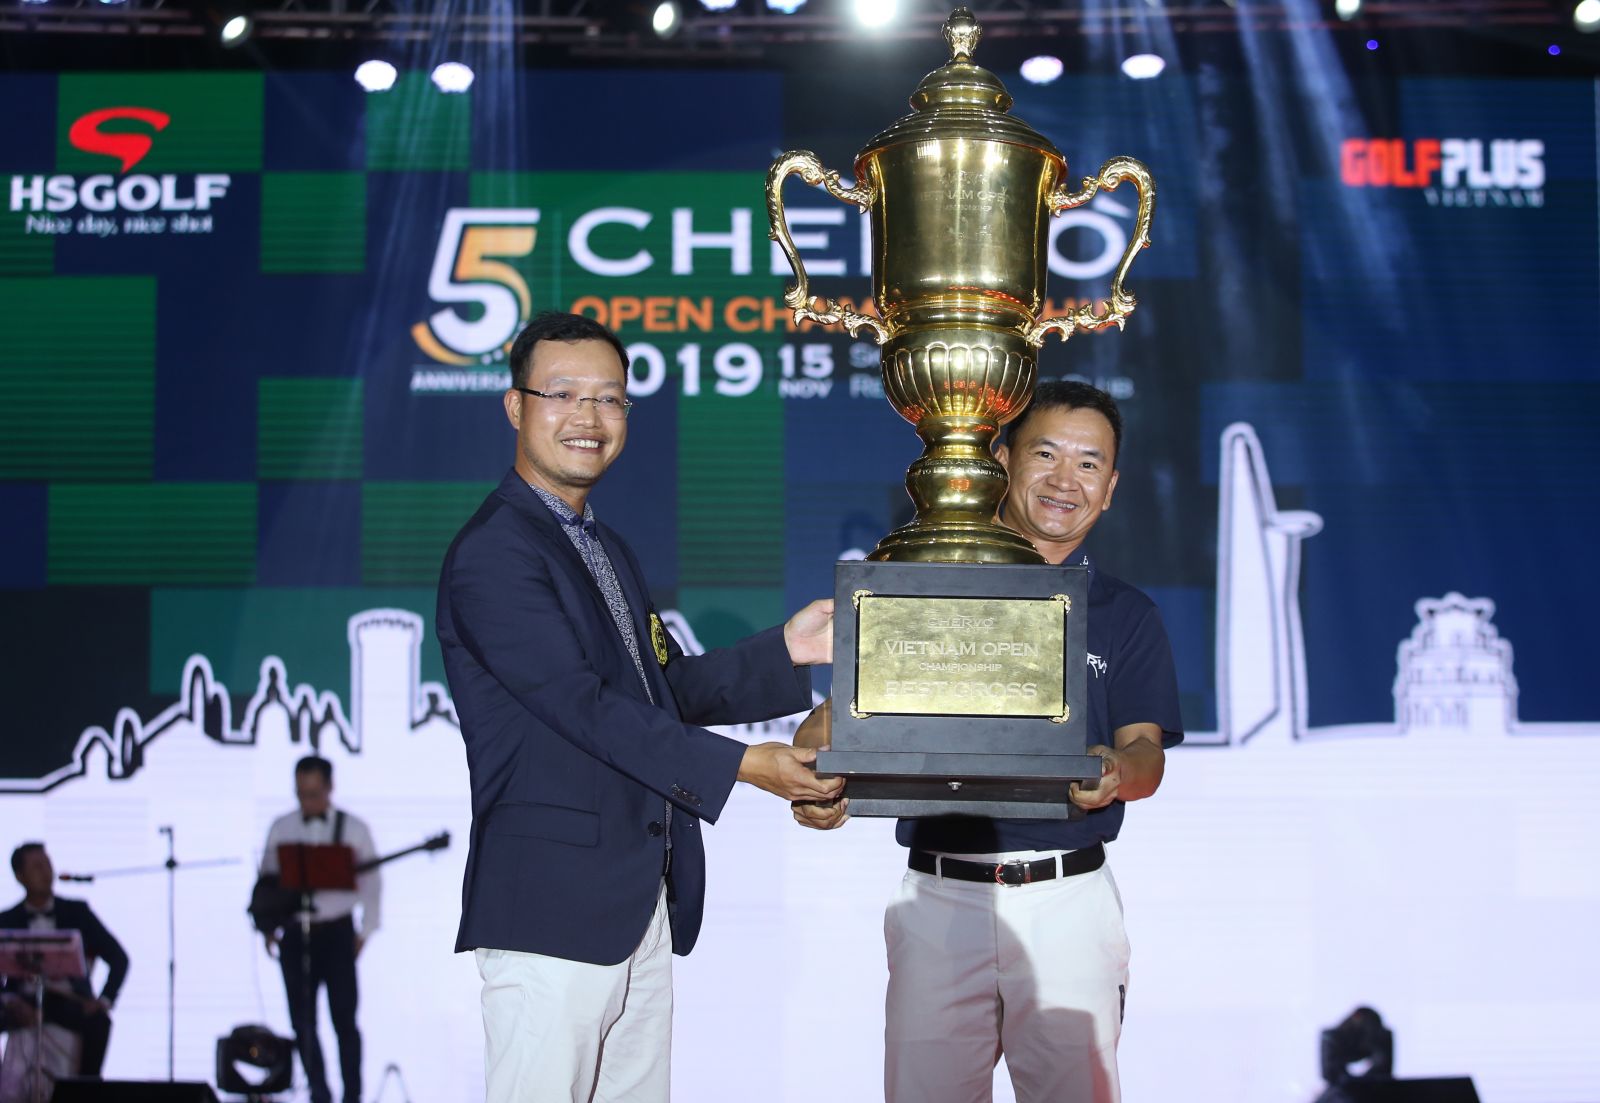 Chervo Open Championship 2019 gọi tên Golfer: Đỗ Anh Đức